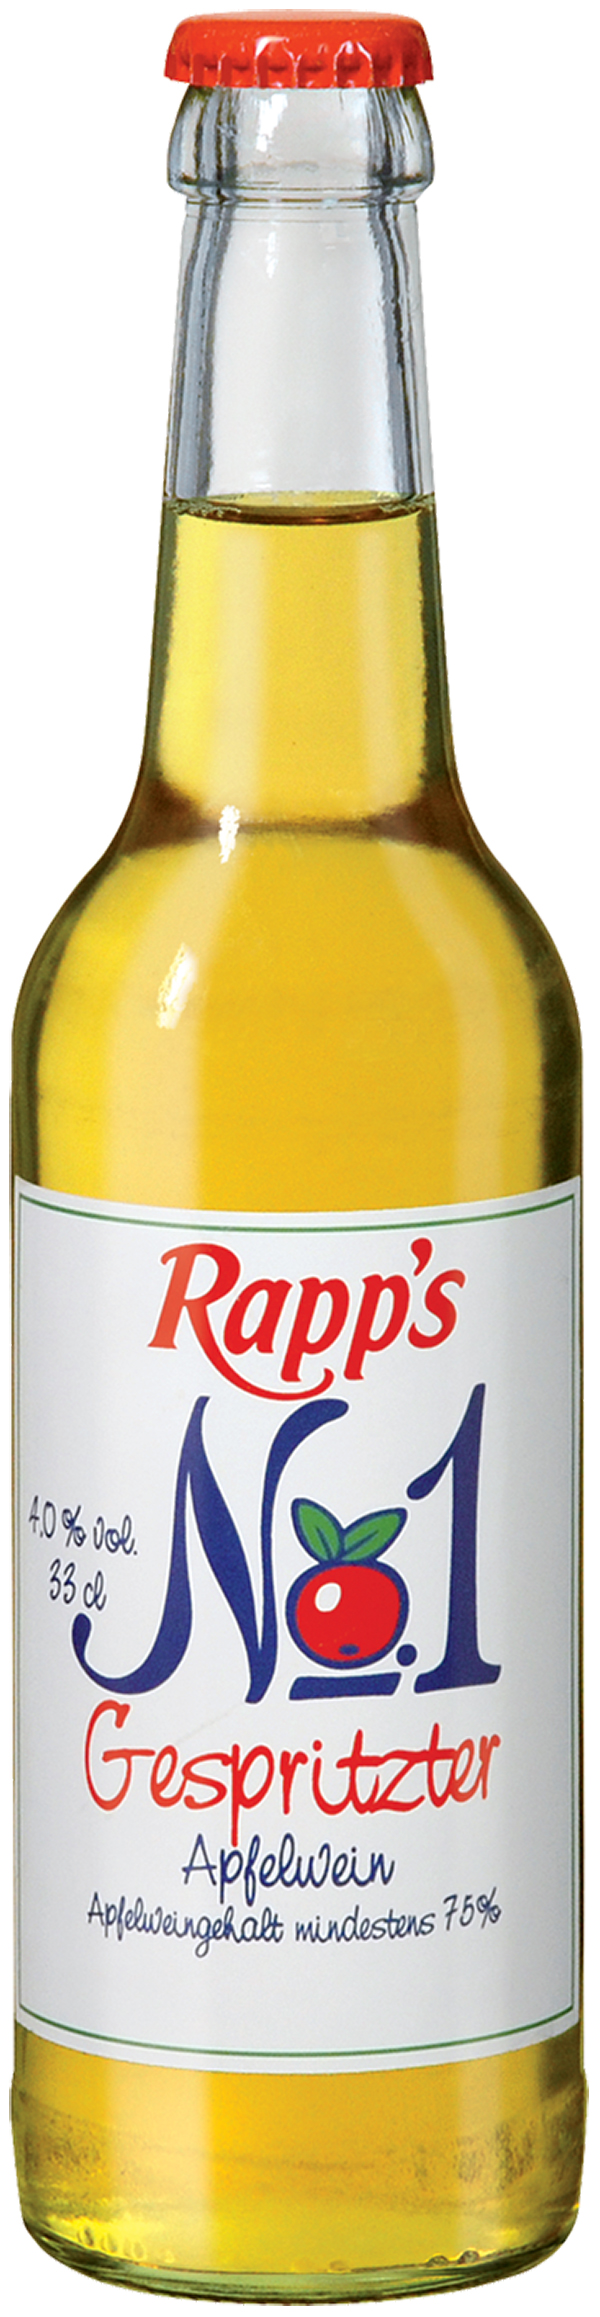 Rapps No1 gespritzter Apfelwein 24 x 0,33 l (Glas)